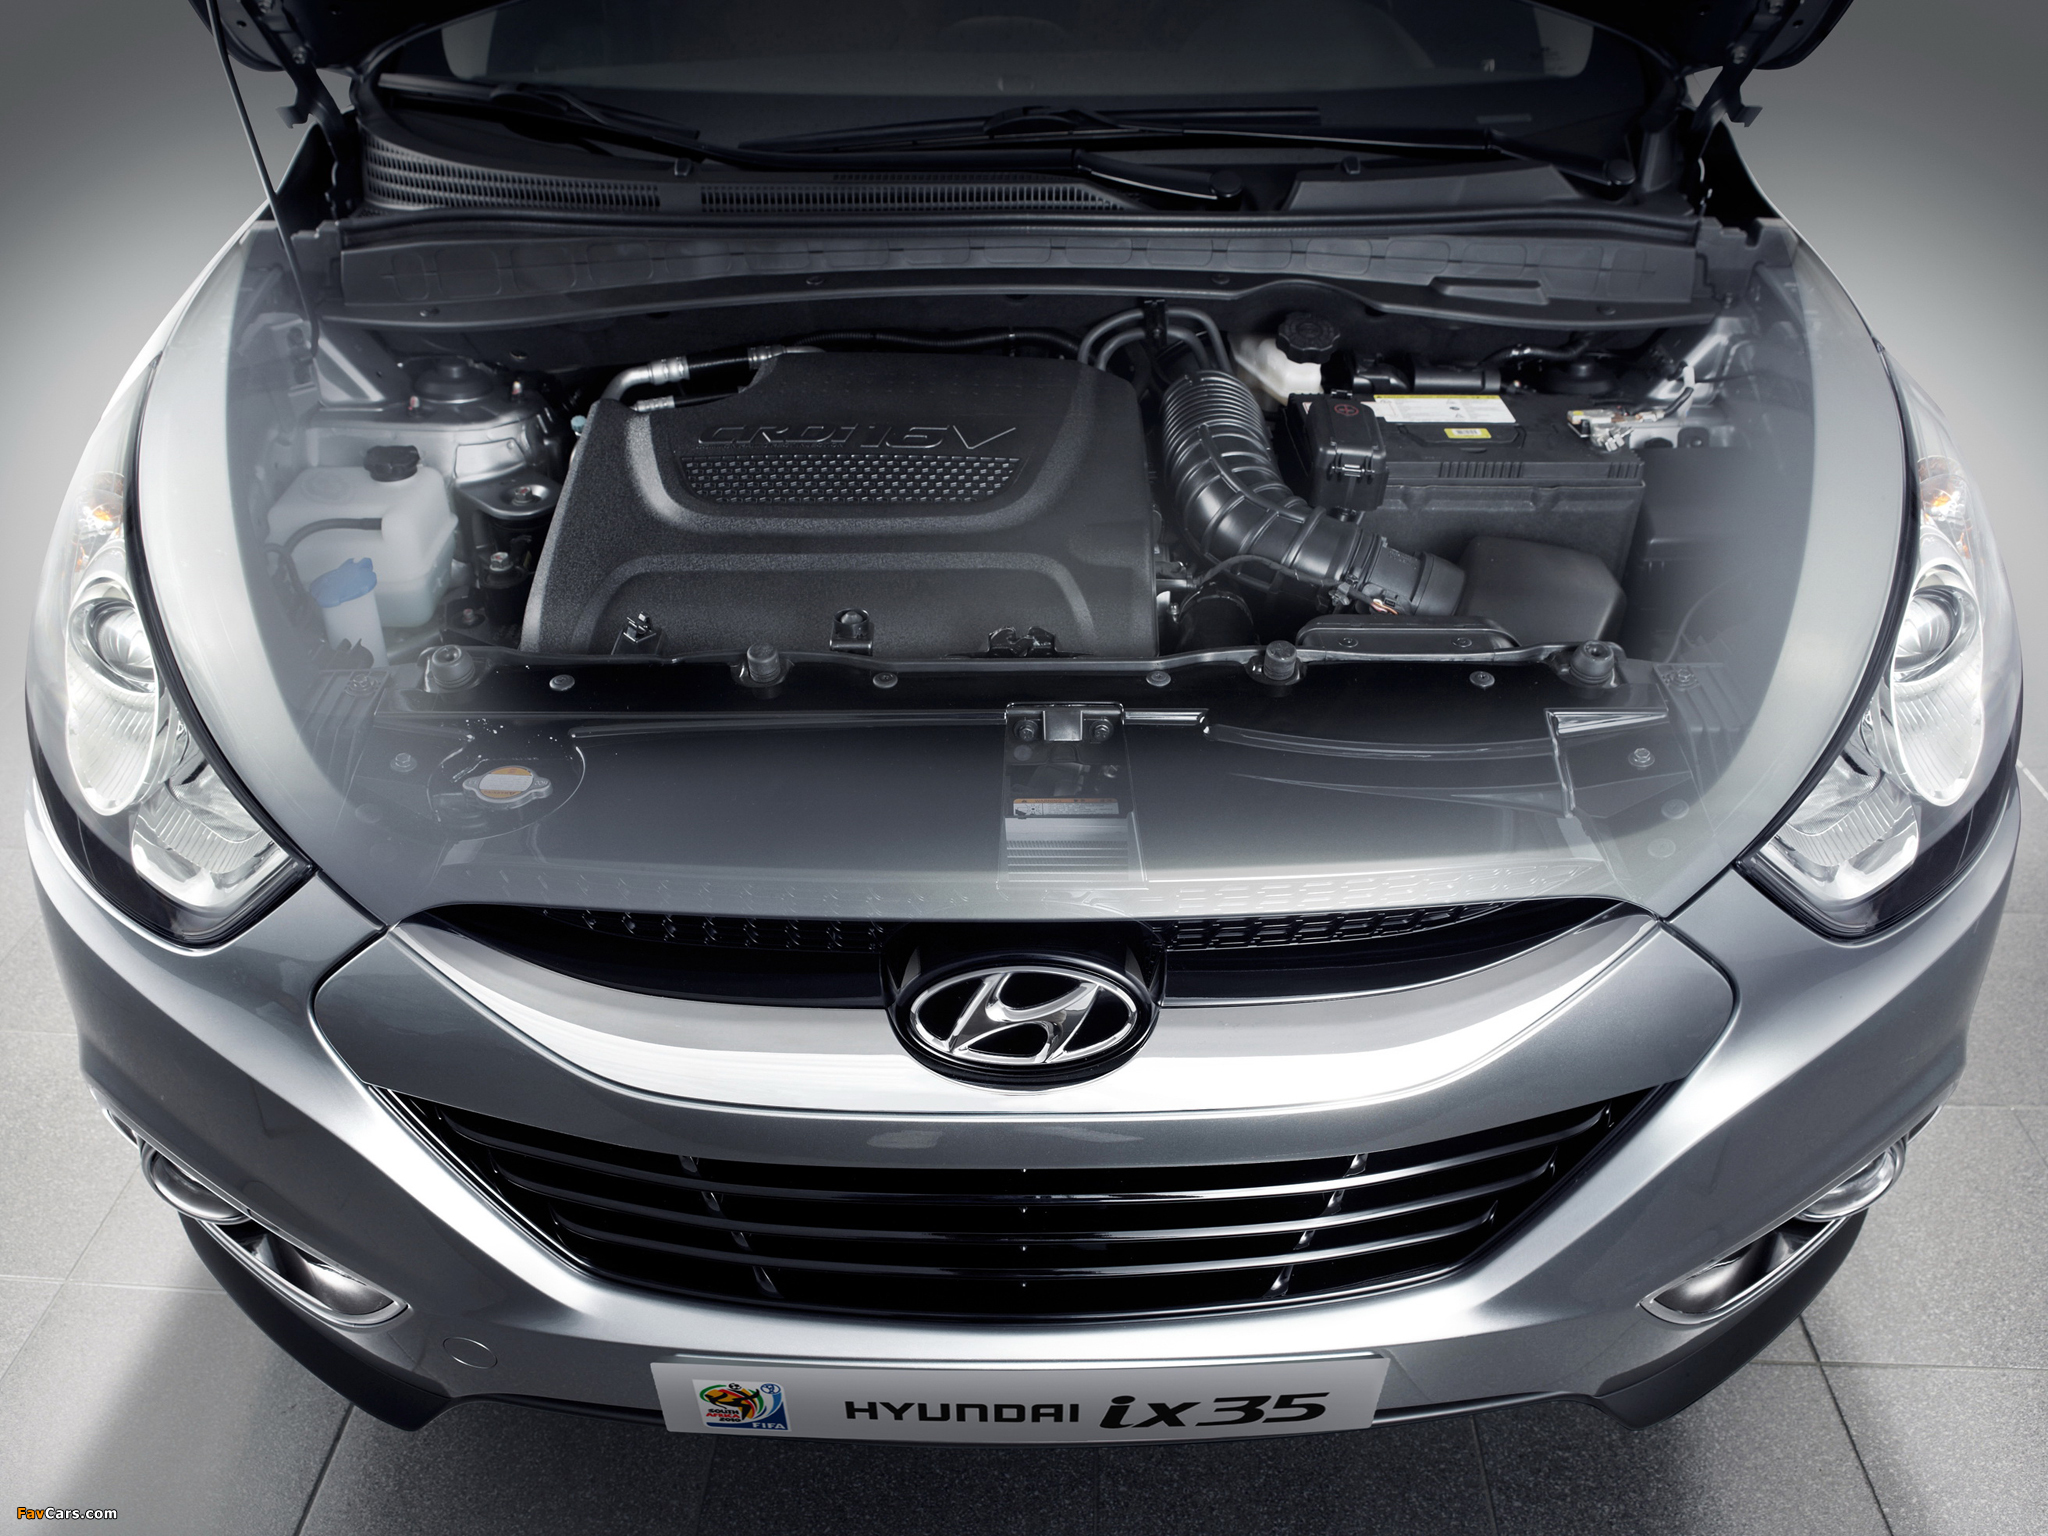 Капот хендай 35. Hyundai ix35 двигатель 2.0. Hyundai ix35 под капотом. Двигатель Хендай ix35. Hyundai ix35 двигатель дизель.